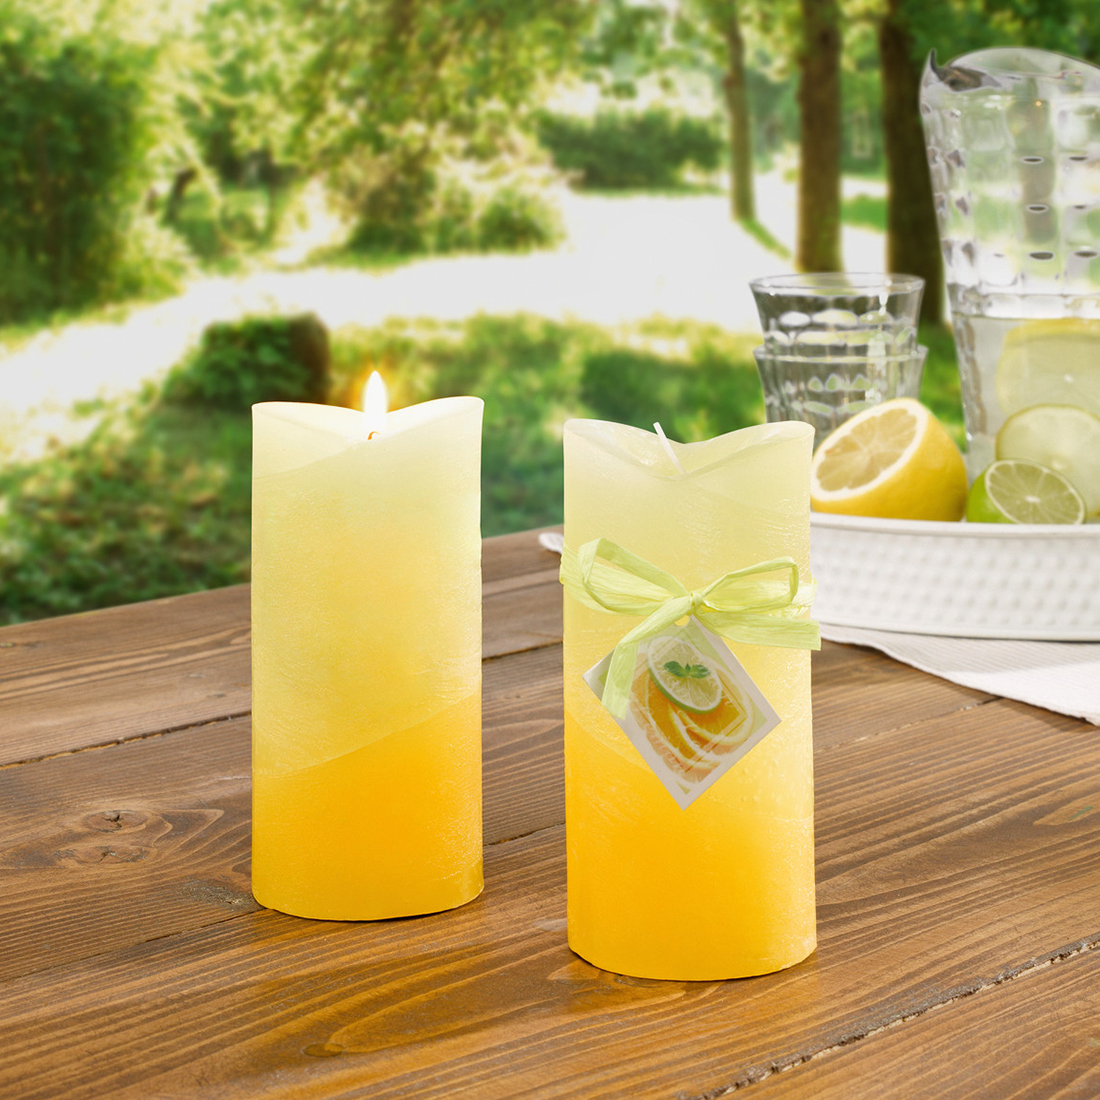 Свечи ароматические "Лимон", 2 штуки [06852], 